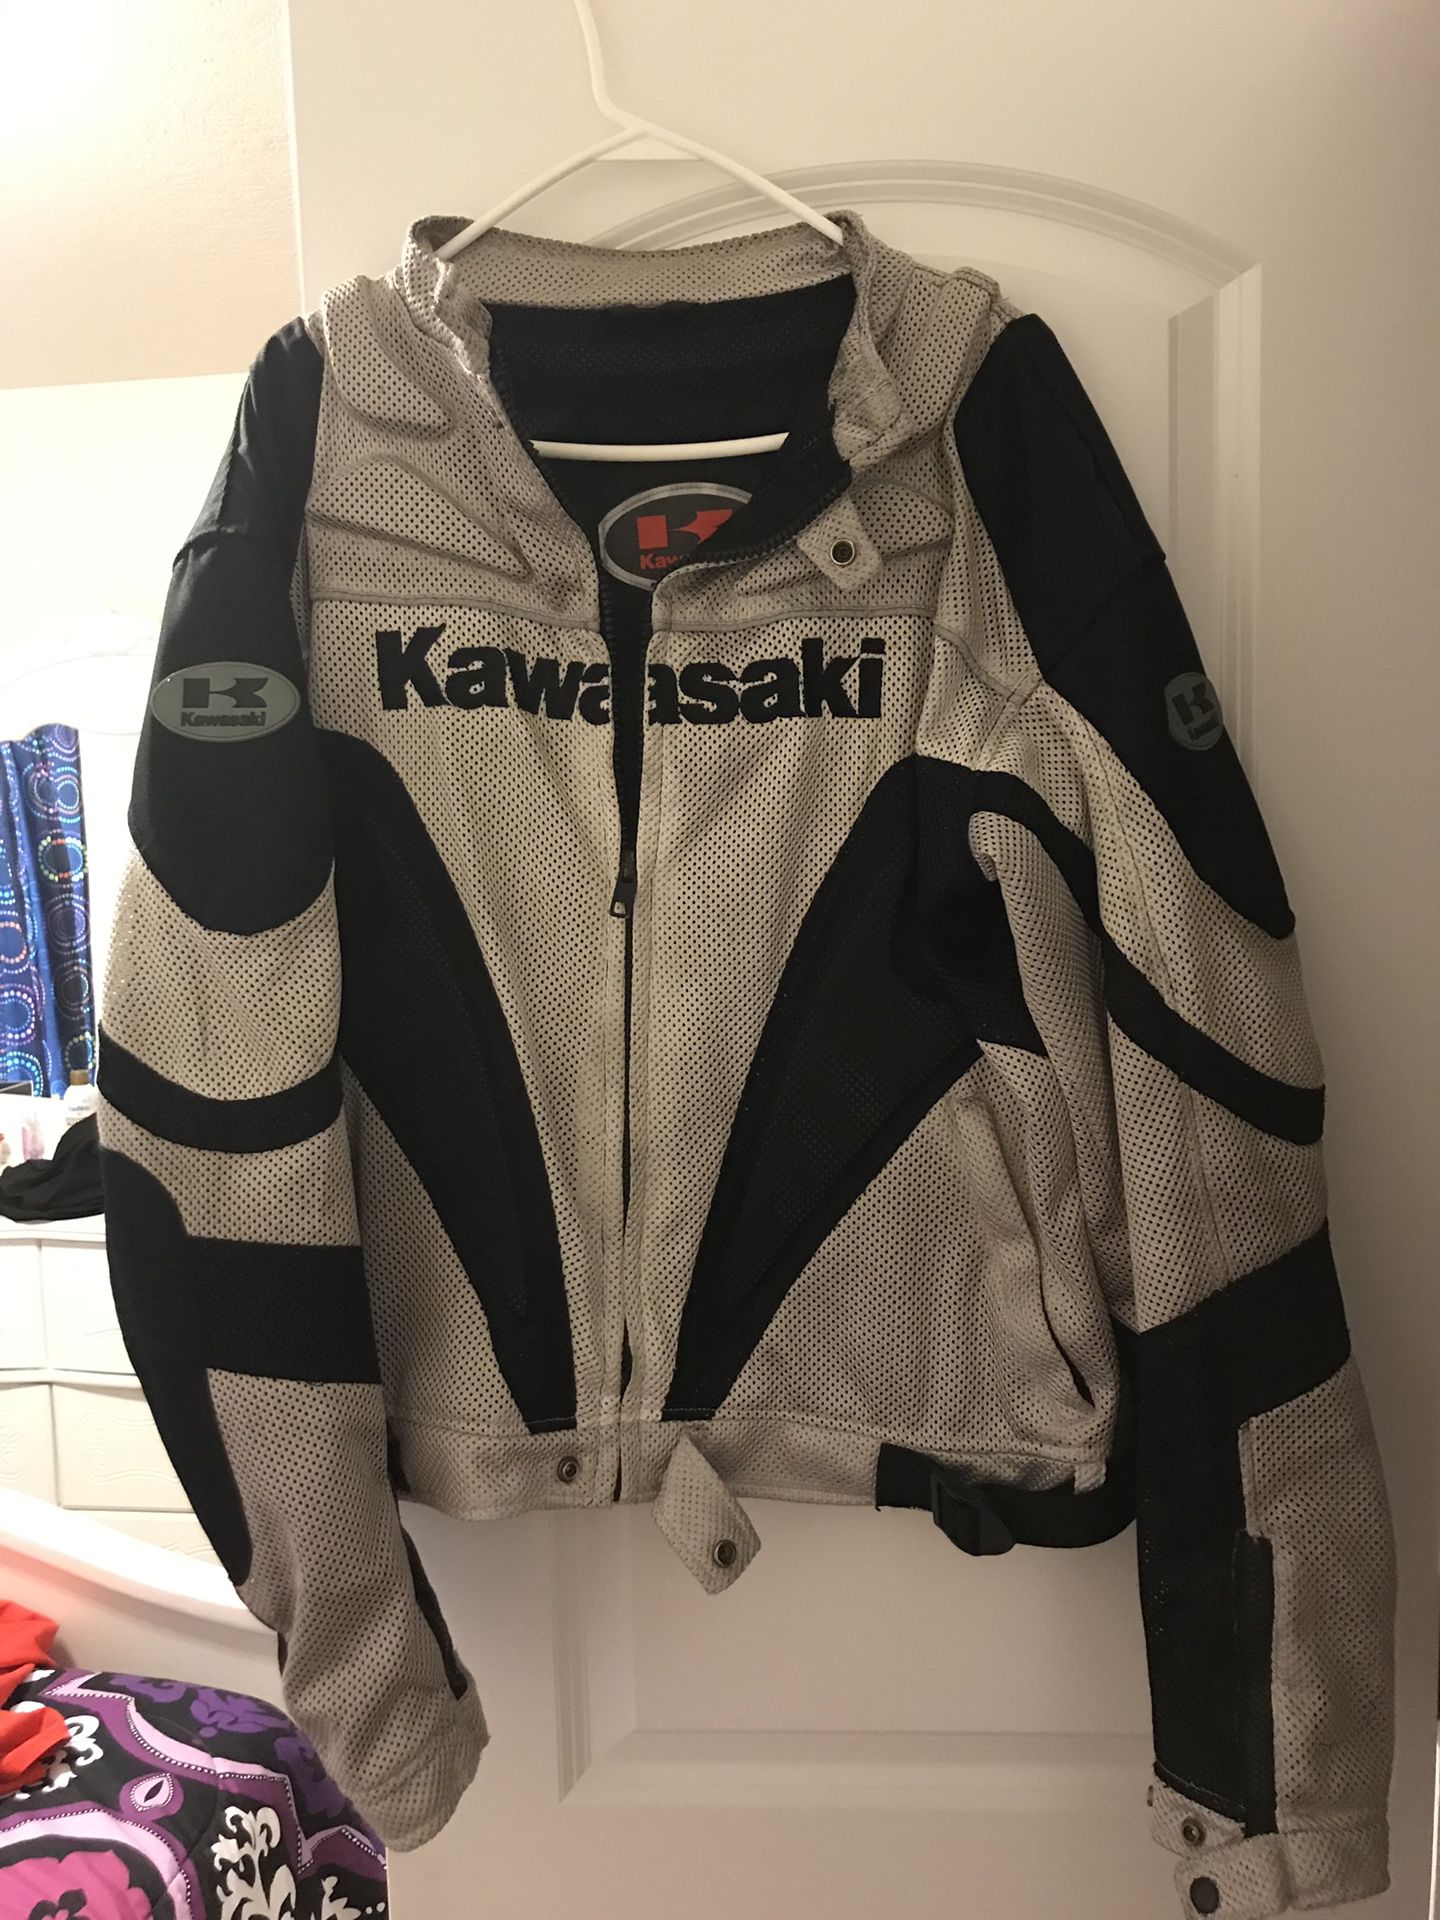 Kawasaki motorcycle jacket 2xL